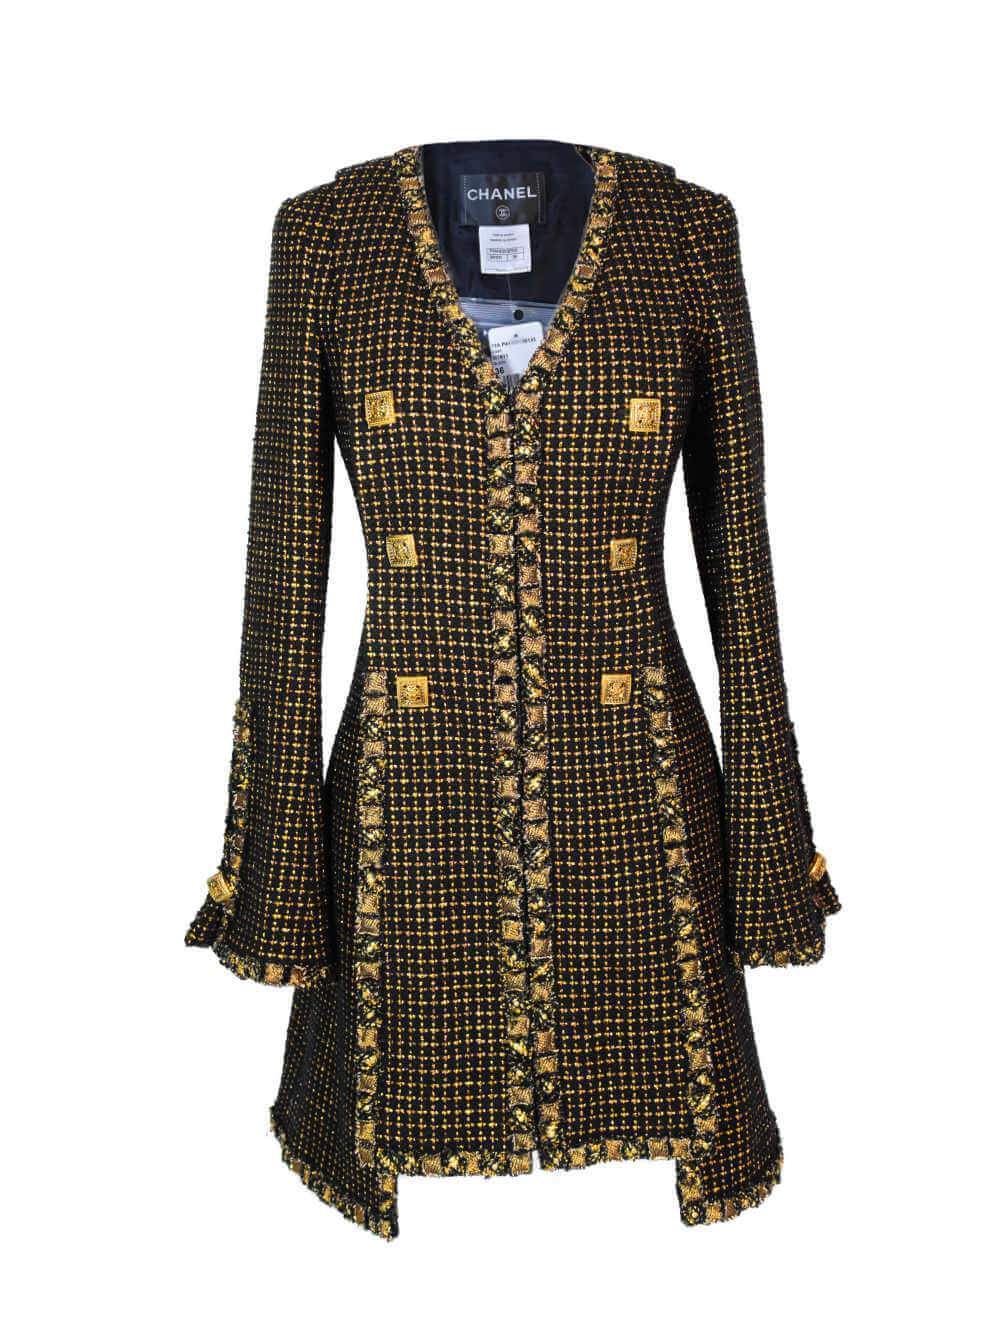 CHANEL Lesage Tweed Fitted Jacket Gold Black-designer resale